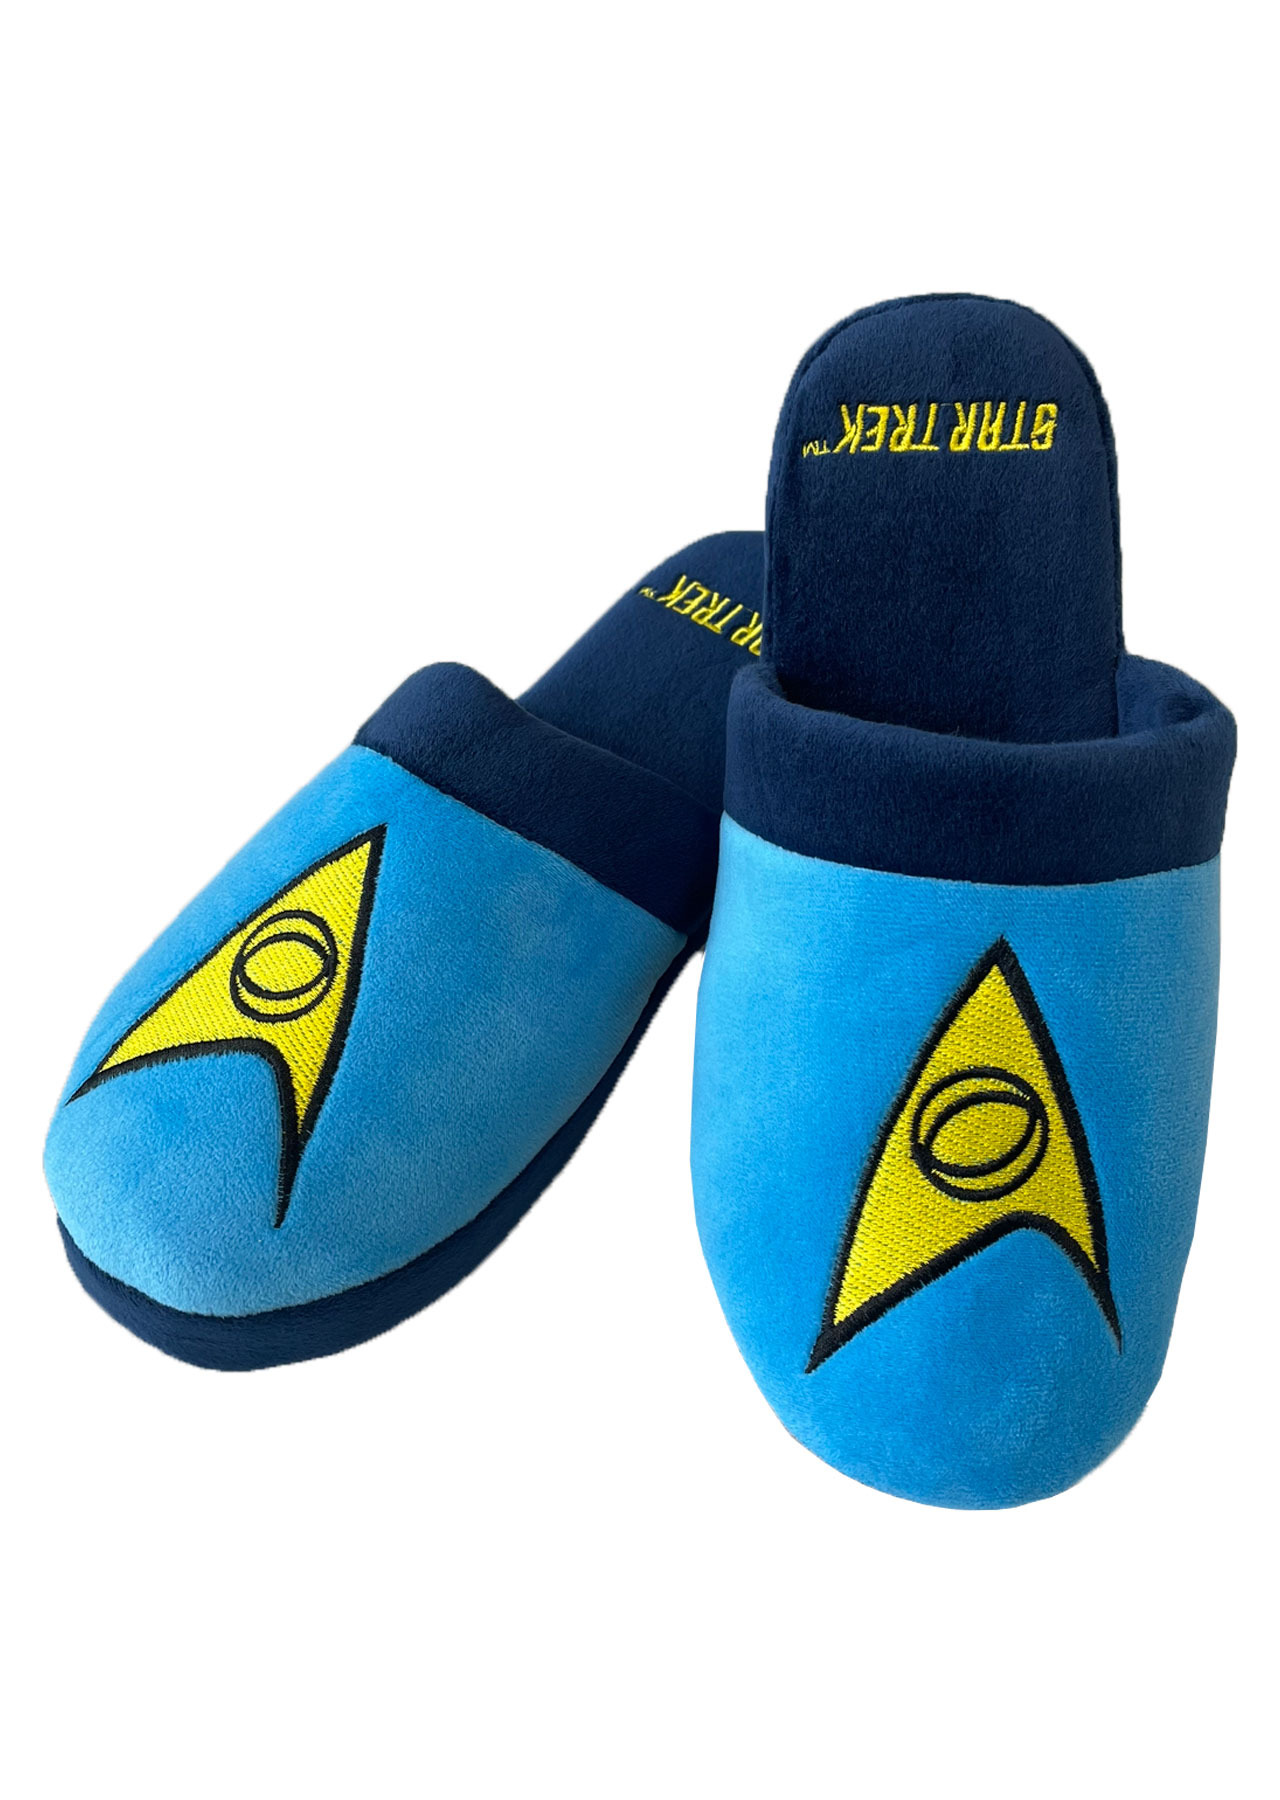 Papuče Star Trek - Spock Original (veľkosť 42-45)